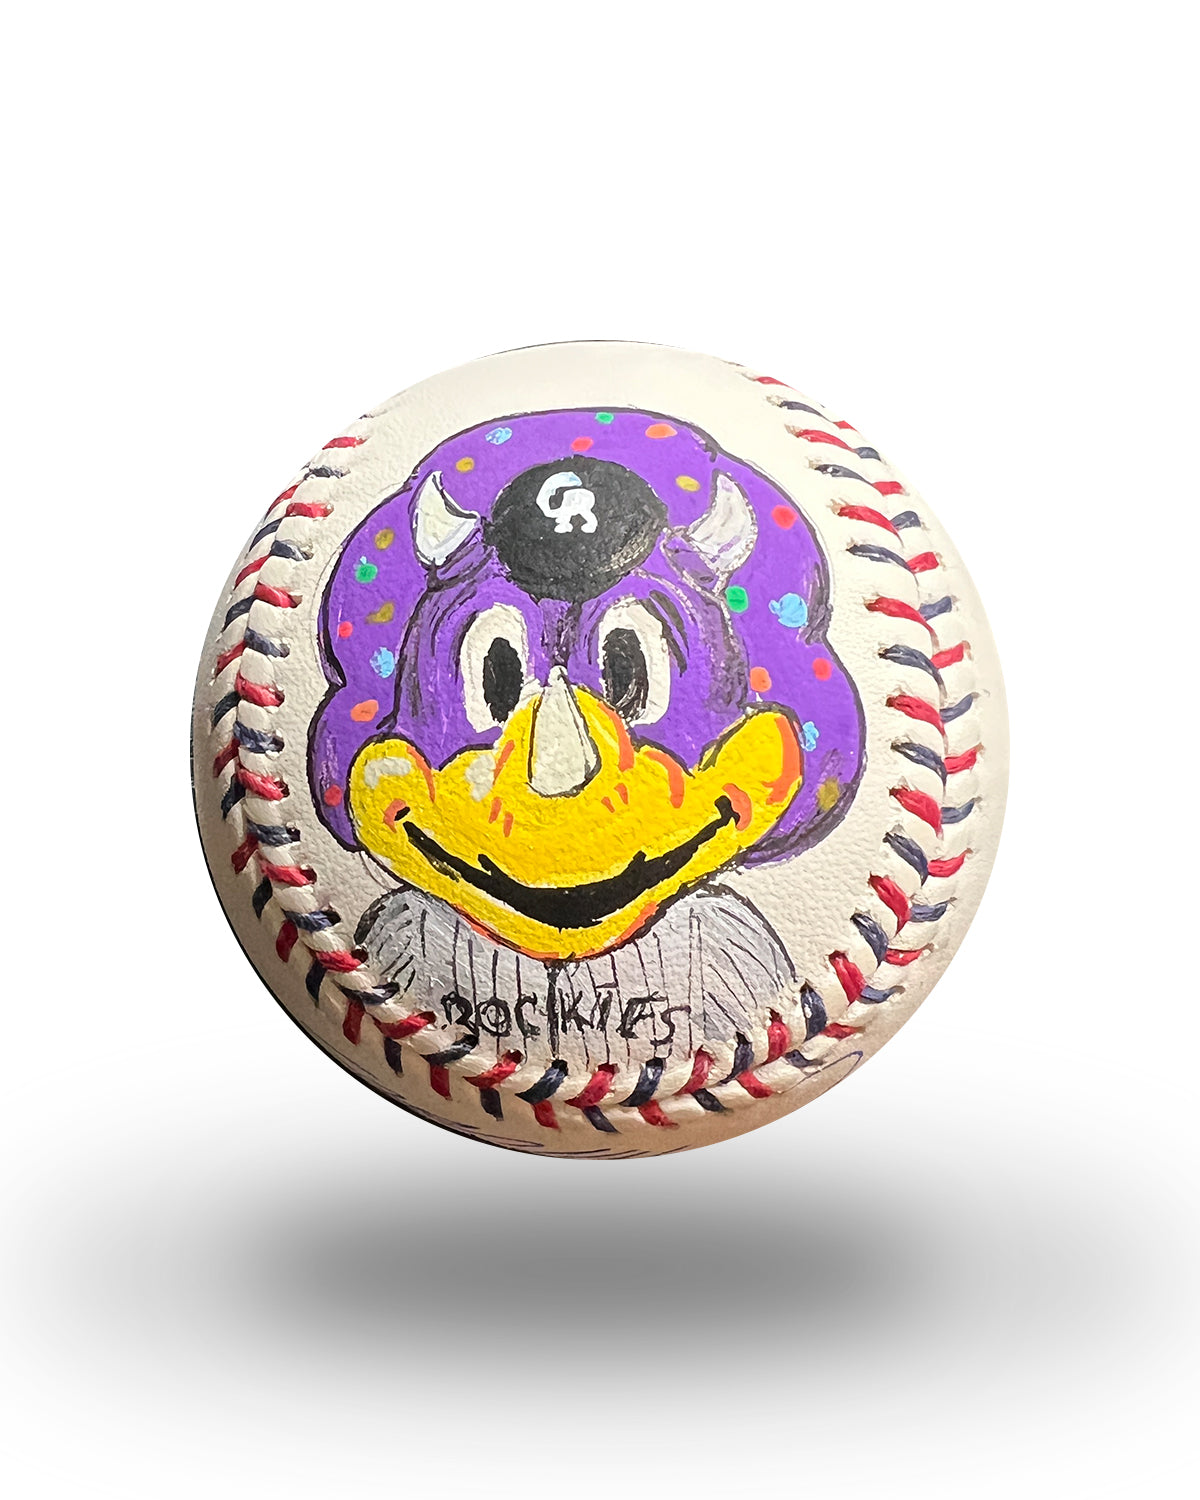 Dinger - Colorado Rockies (MLB)  Colorado rockies baseball, Mascot,  Rockies baseball